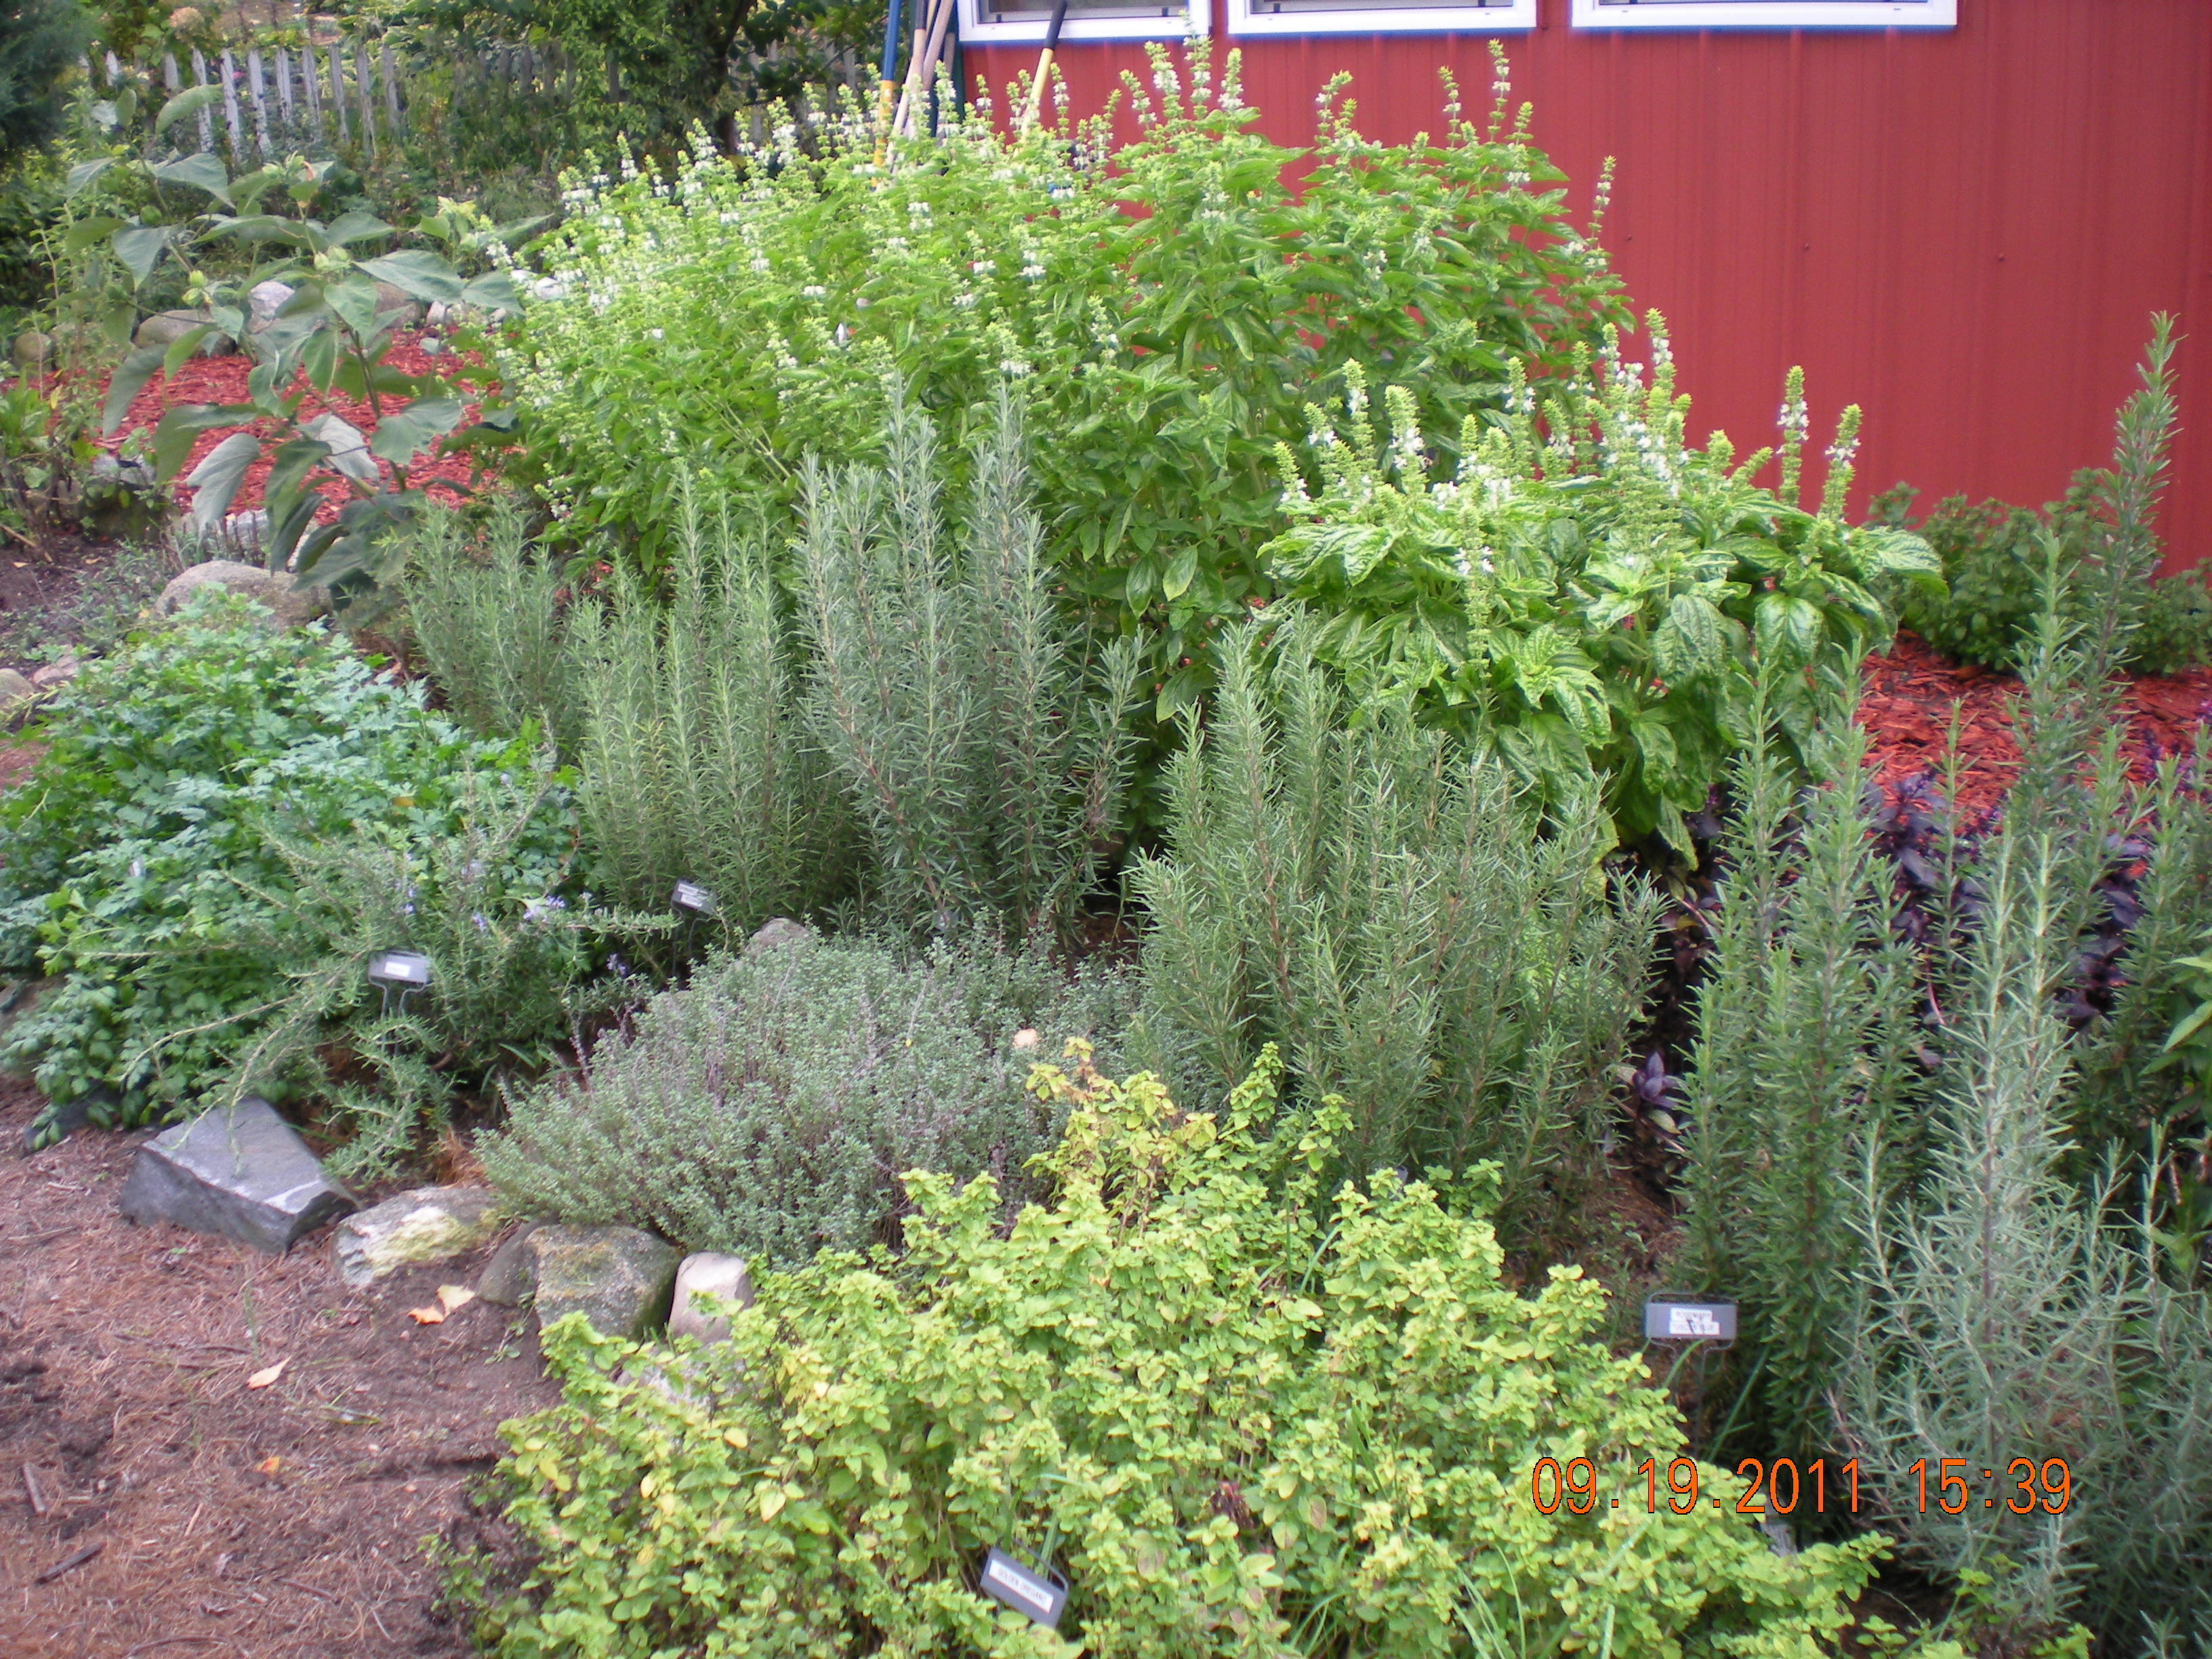 the herb garden